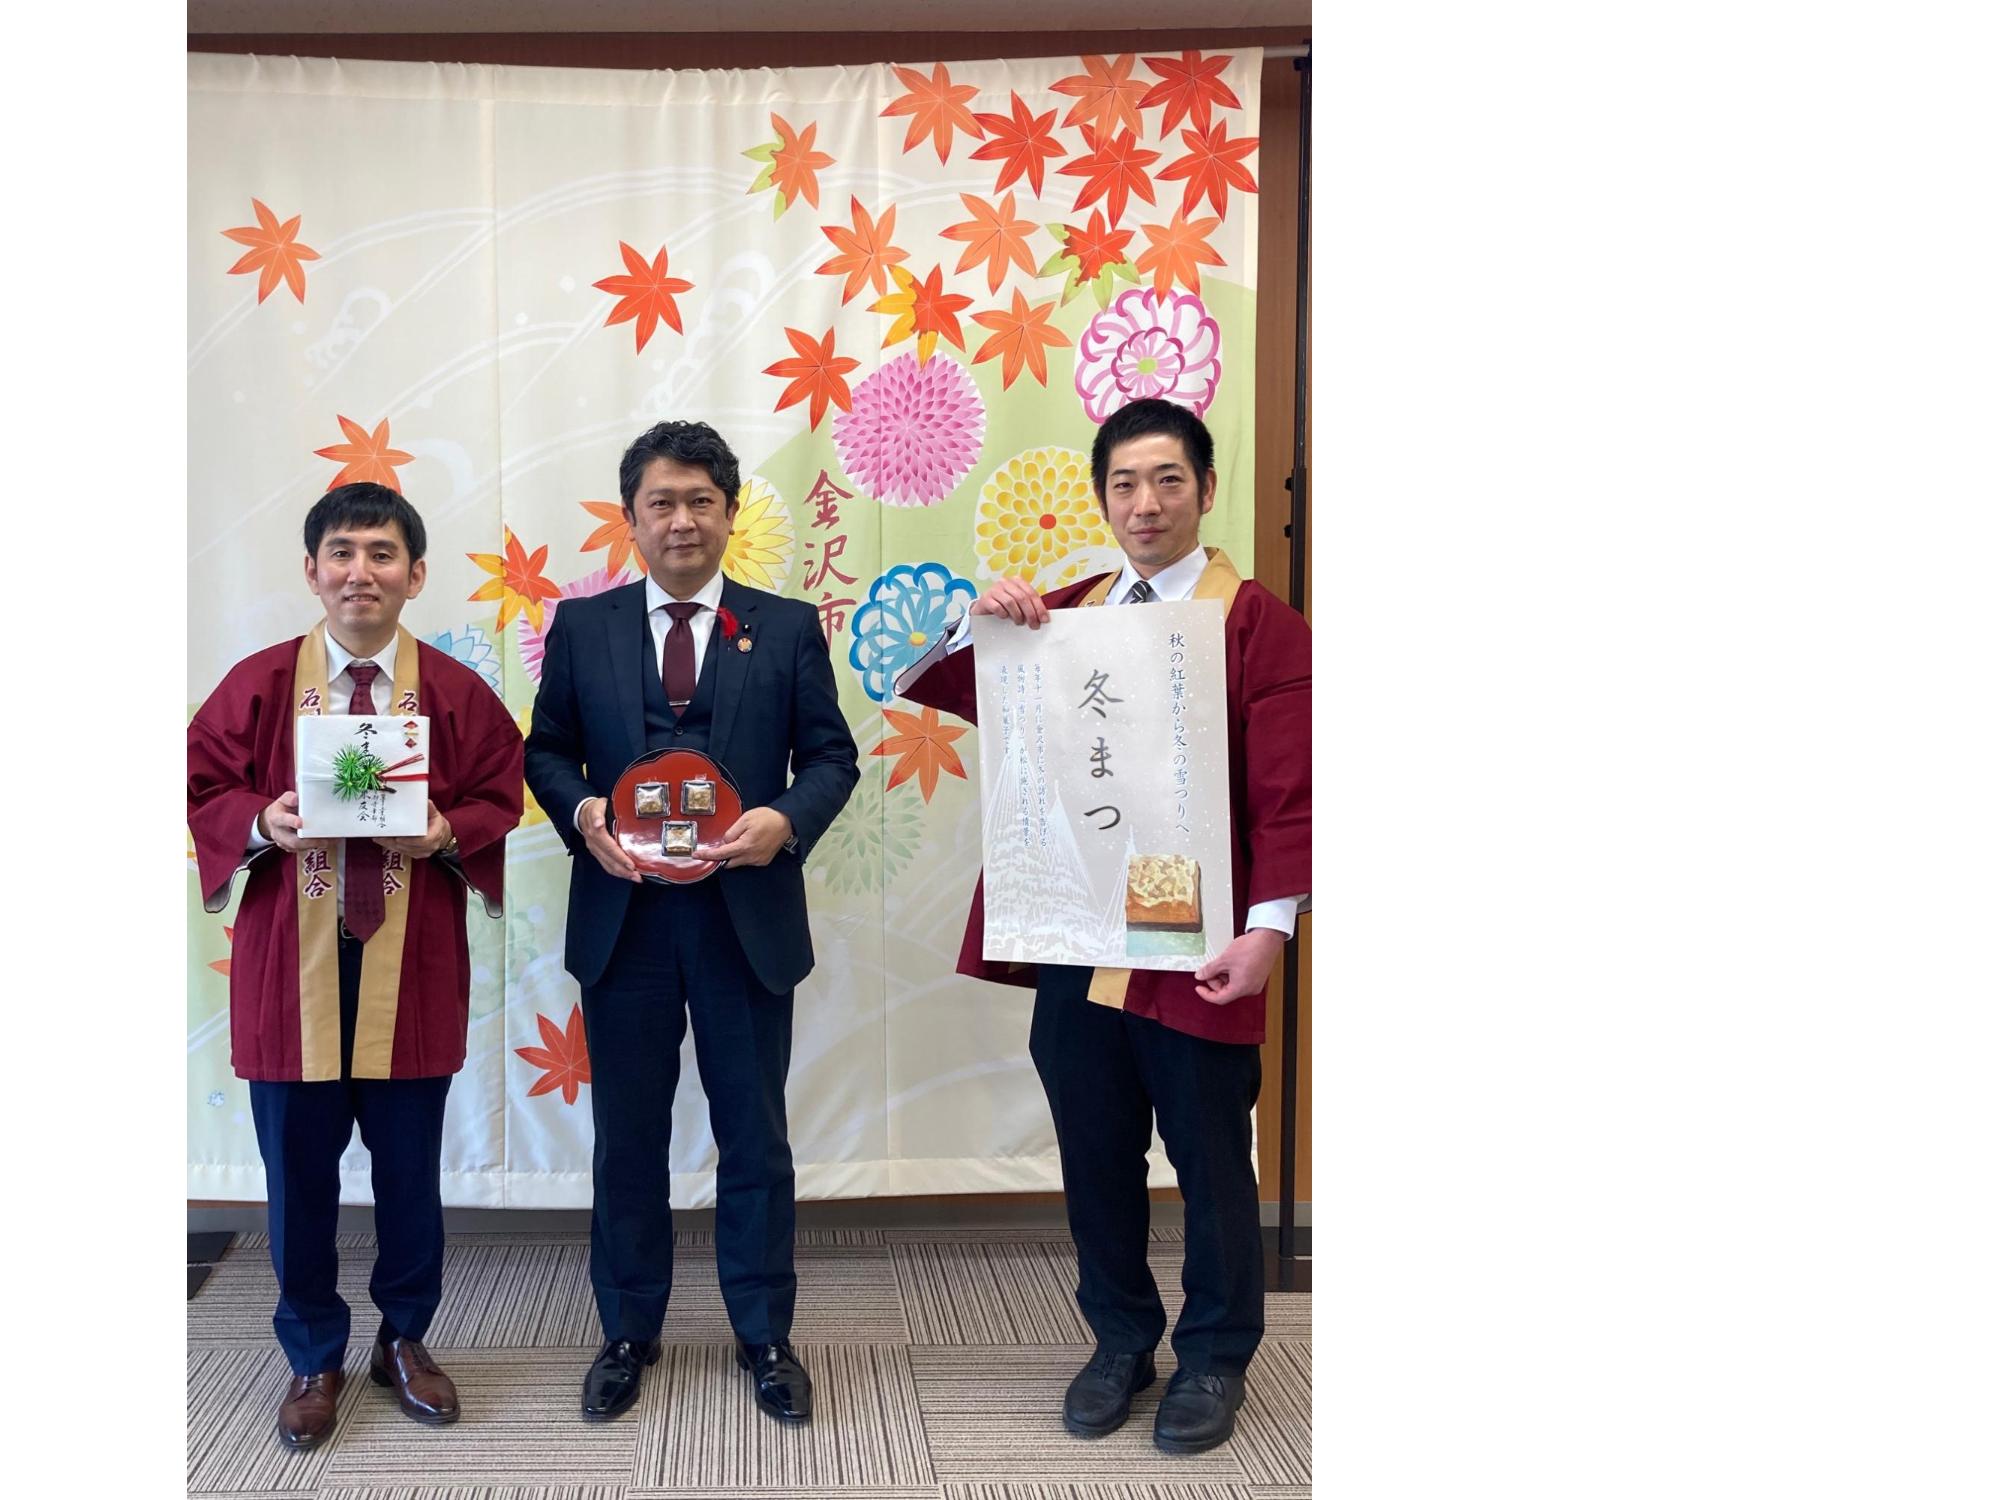 石川県菓子工業組合 金沢支部「菓友会」の2人と市長の写真